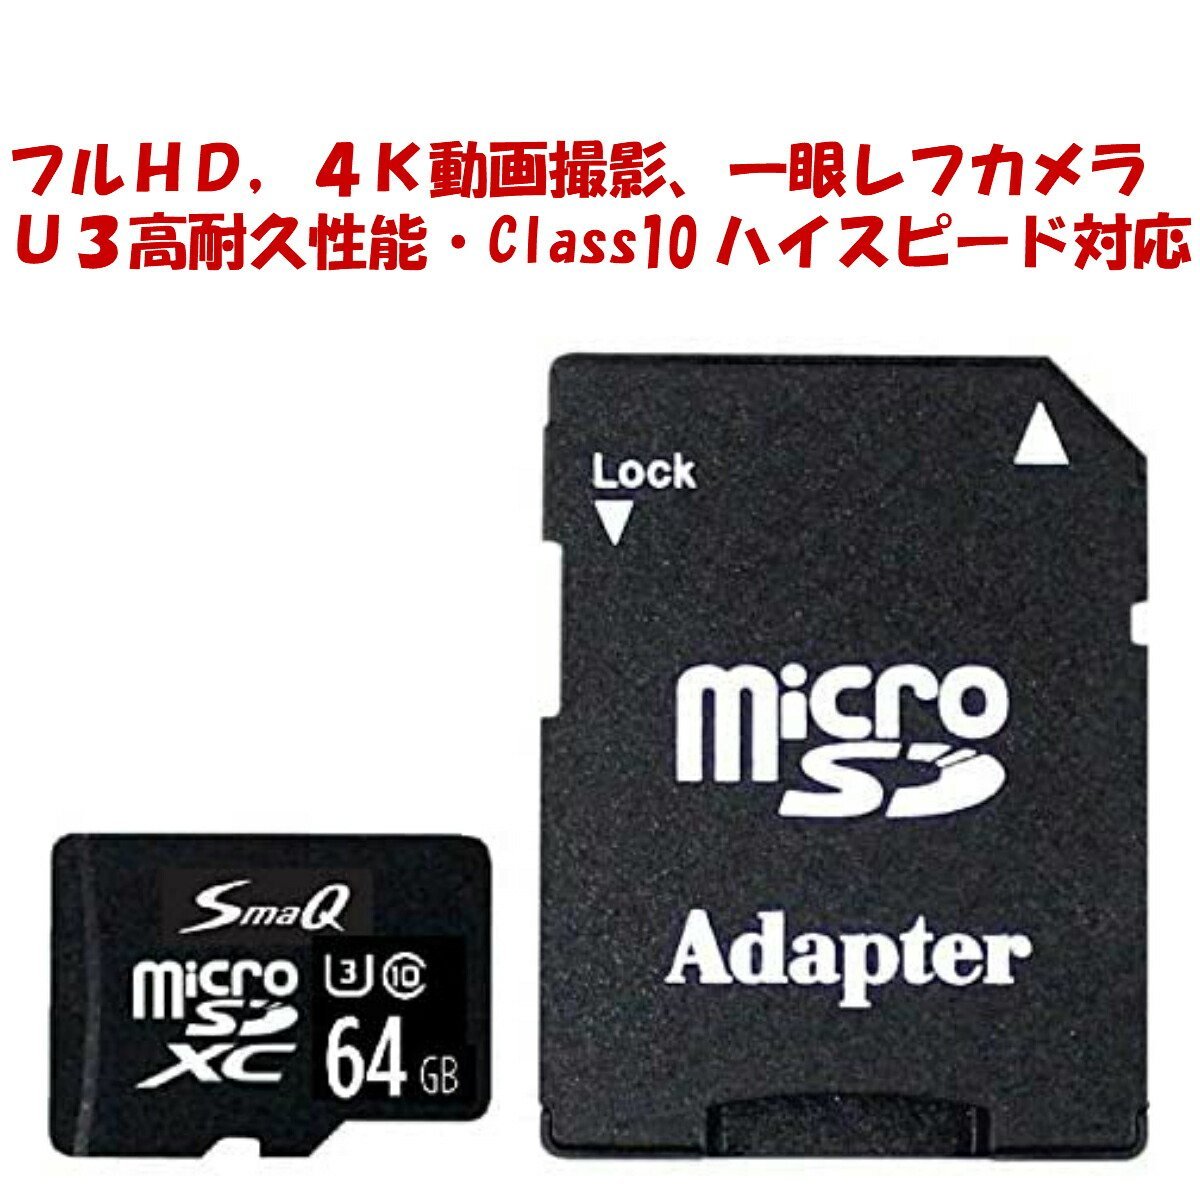 ドラレコ用 マイクロsdカード 64GB U3 class10 2個セット 128gb相当 microSDXC switchsdカード sdカード スマホ 音楽 アダプタ付き_画像10